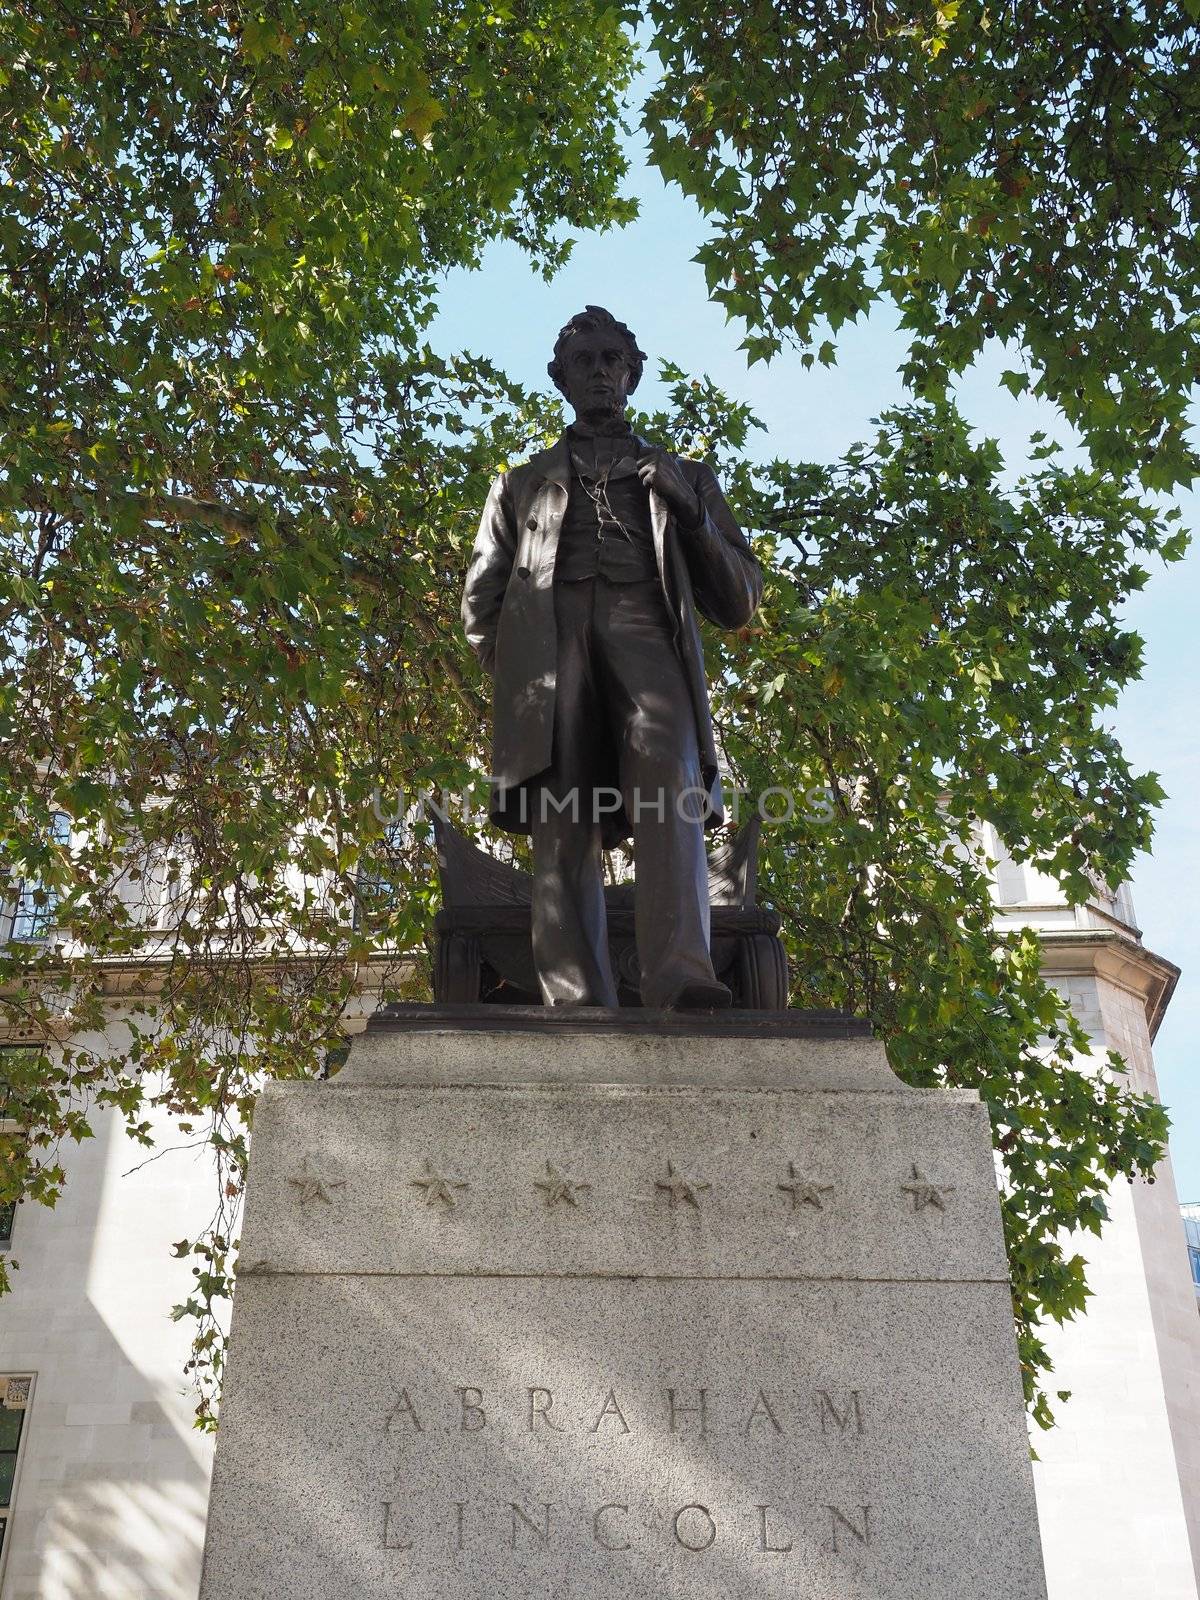 Lincoln statue in London by claudiodivizia